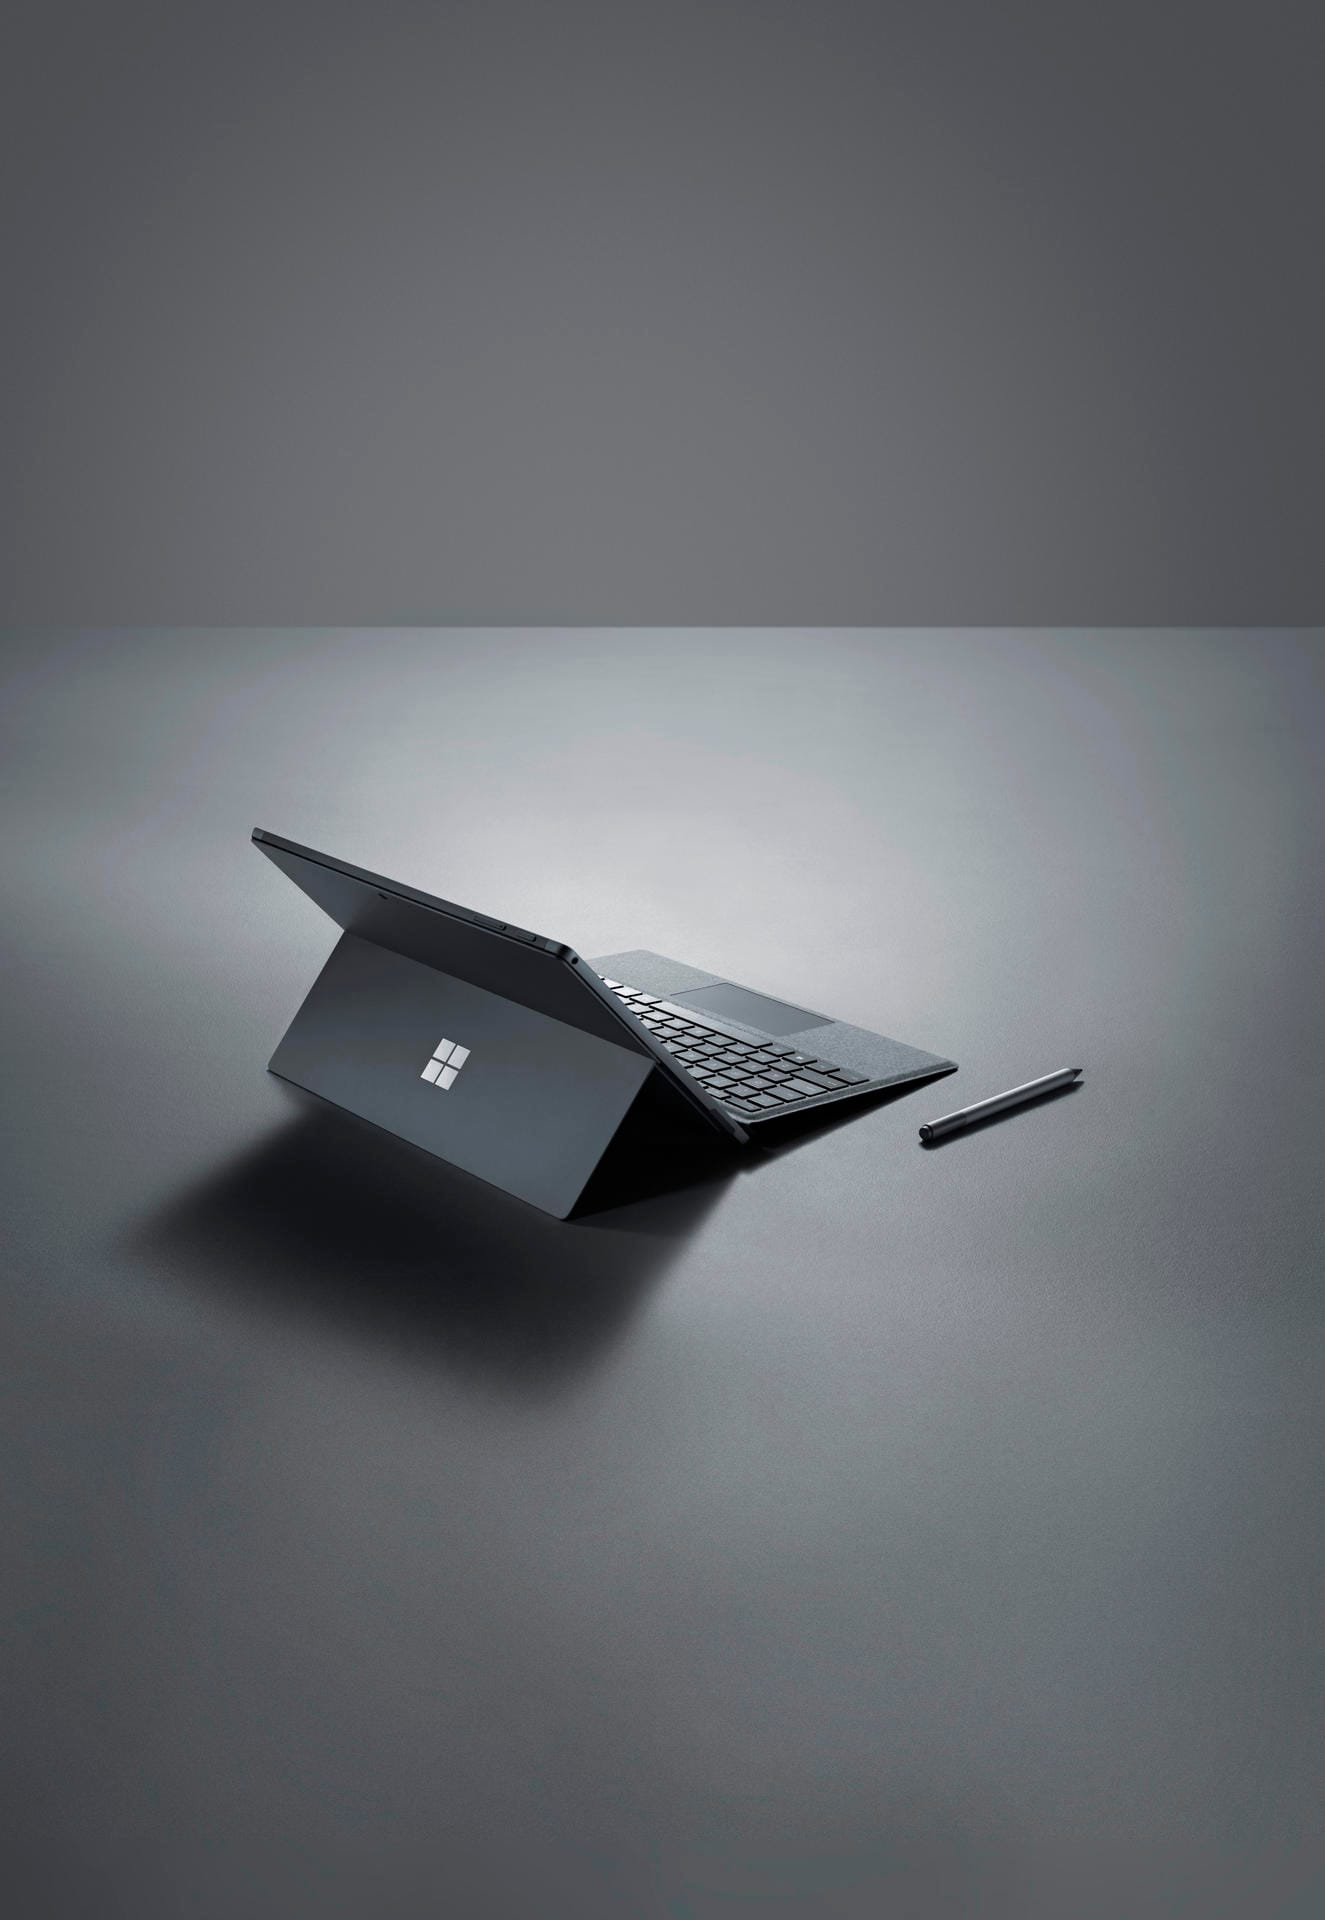 Die Surface-Reihe von Microsoft hat ein reguläres Windows an Bord. Das Surface Pro 6 gibt es je nach Ausstattung ab 1049 Euro.